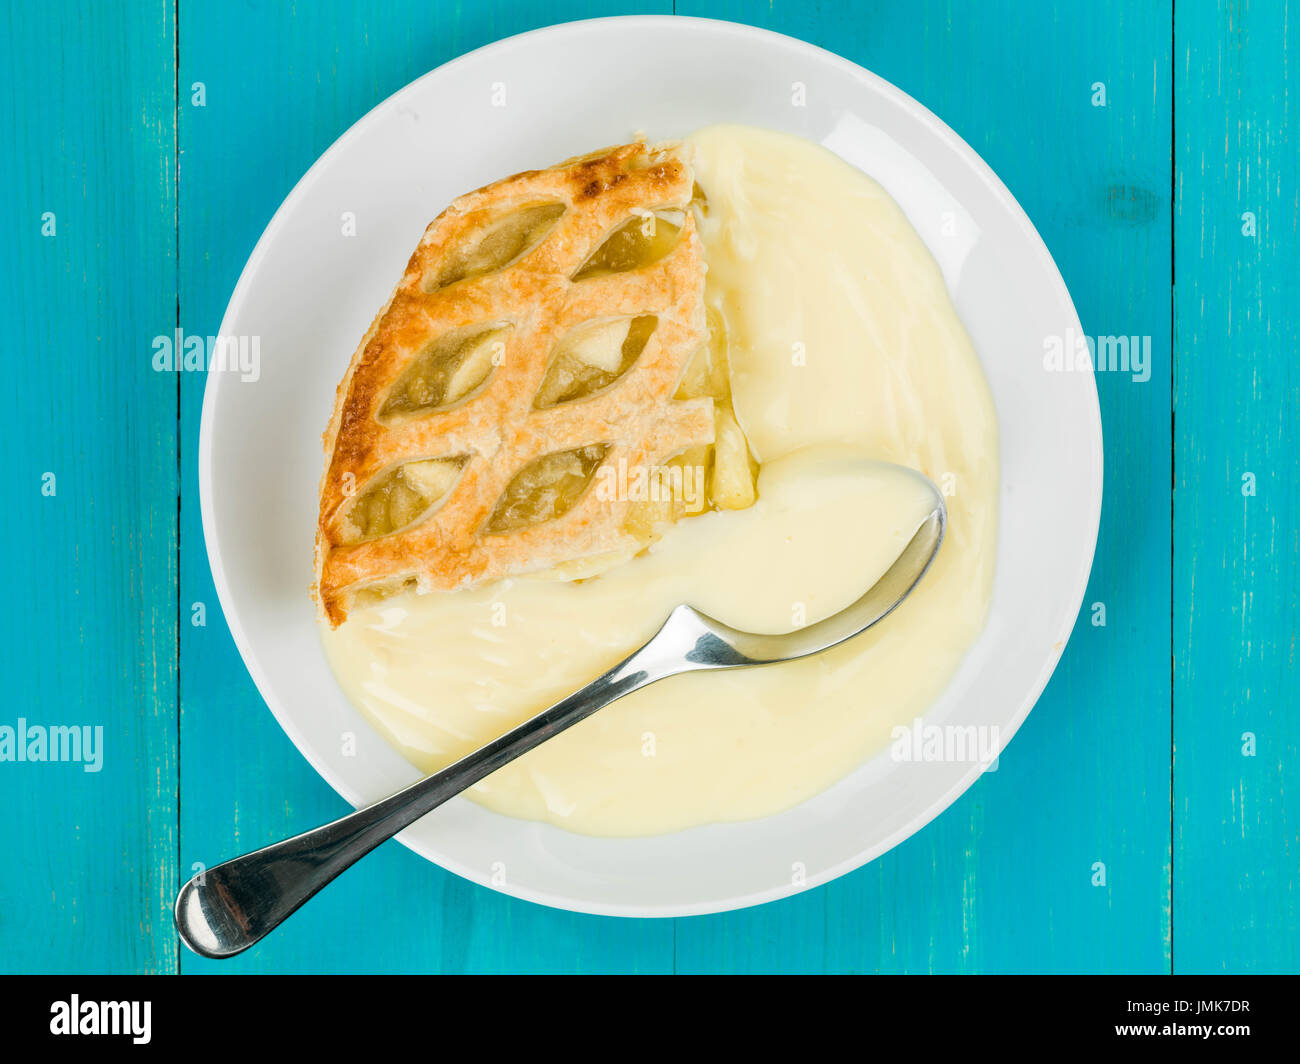 Tarte aux pommes et crème anglaise dessert against a blue background Banque D'Images